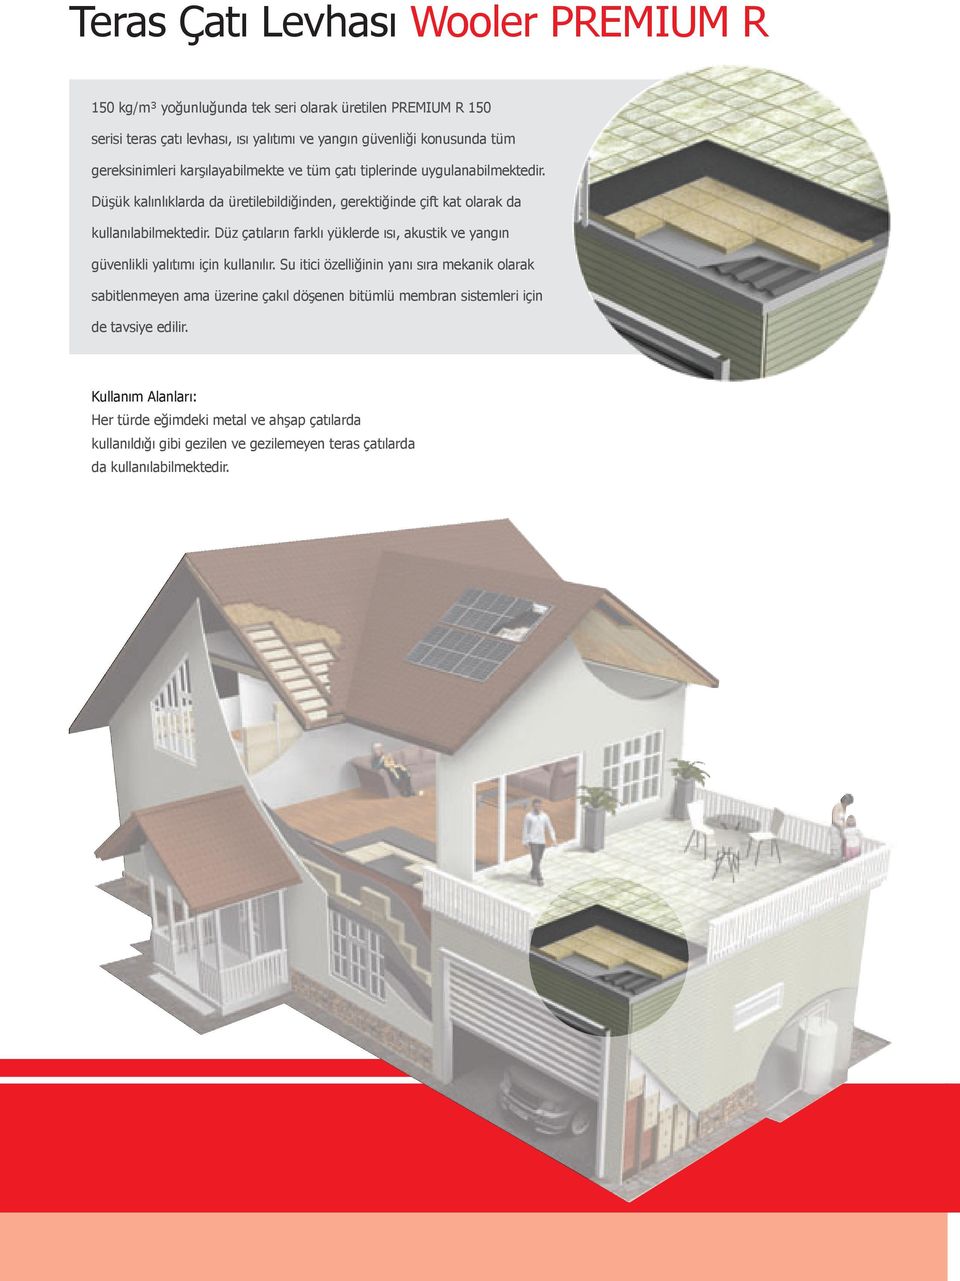 Düz çatıların farklı yüklerde ısı, akustik ve yangın güvenlikli yalıtımı için kullanılır.